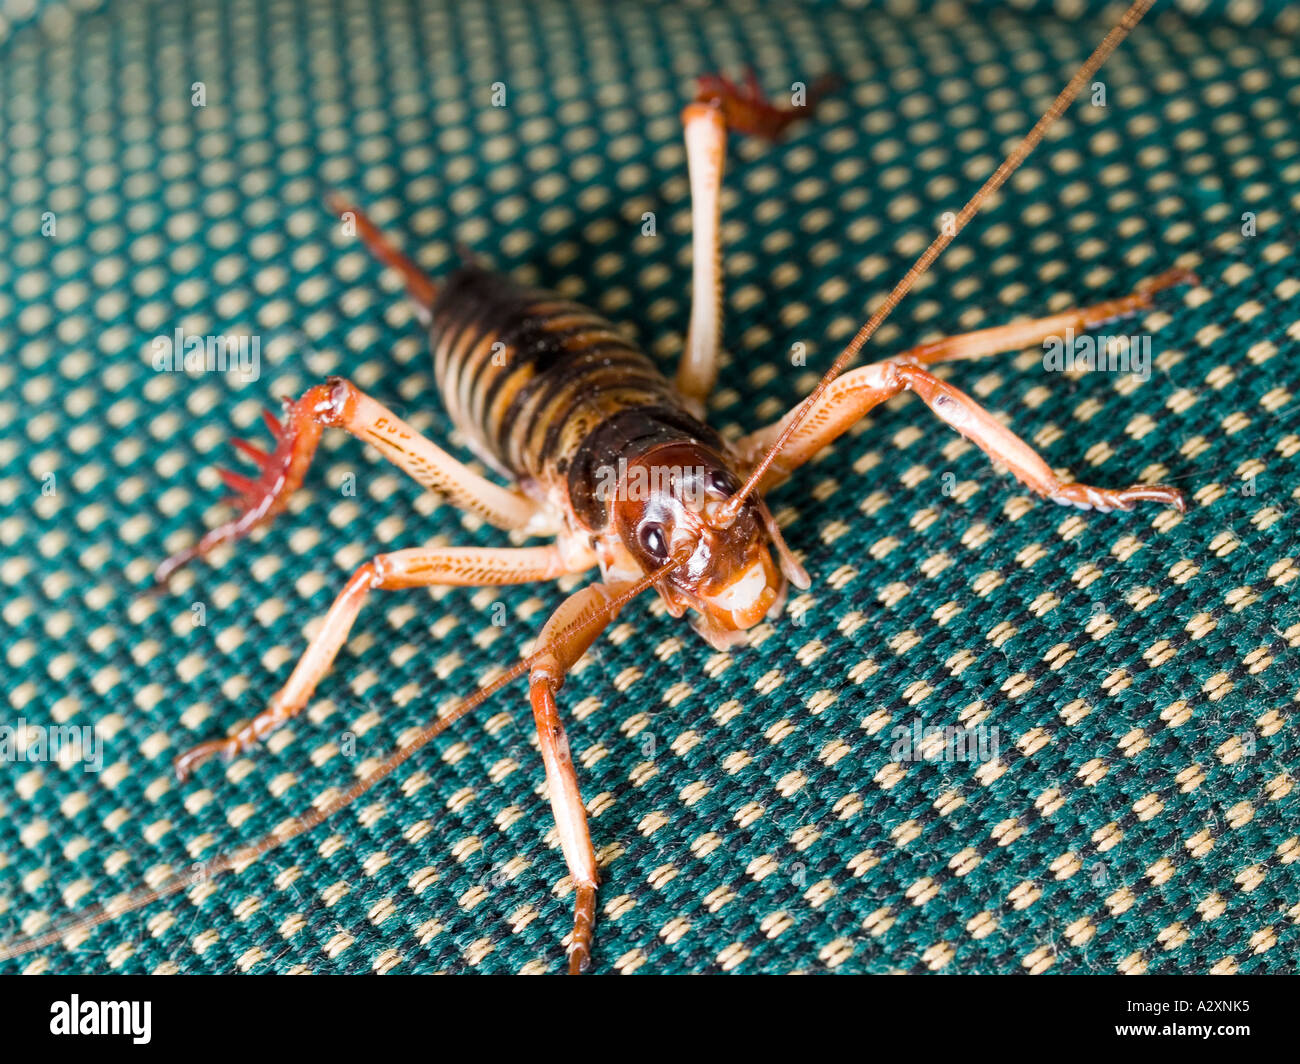 Diese Weta im Zusammenhang mit einem exotischen Insekt Heuschrecken, Grillen  und Heuschrecken Reittiere eine Herausforderung während es klammert sich an  einen Stuhl Stockfotografie - Alamy